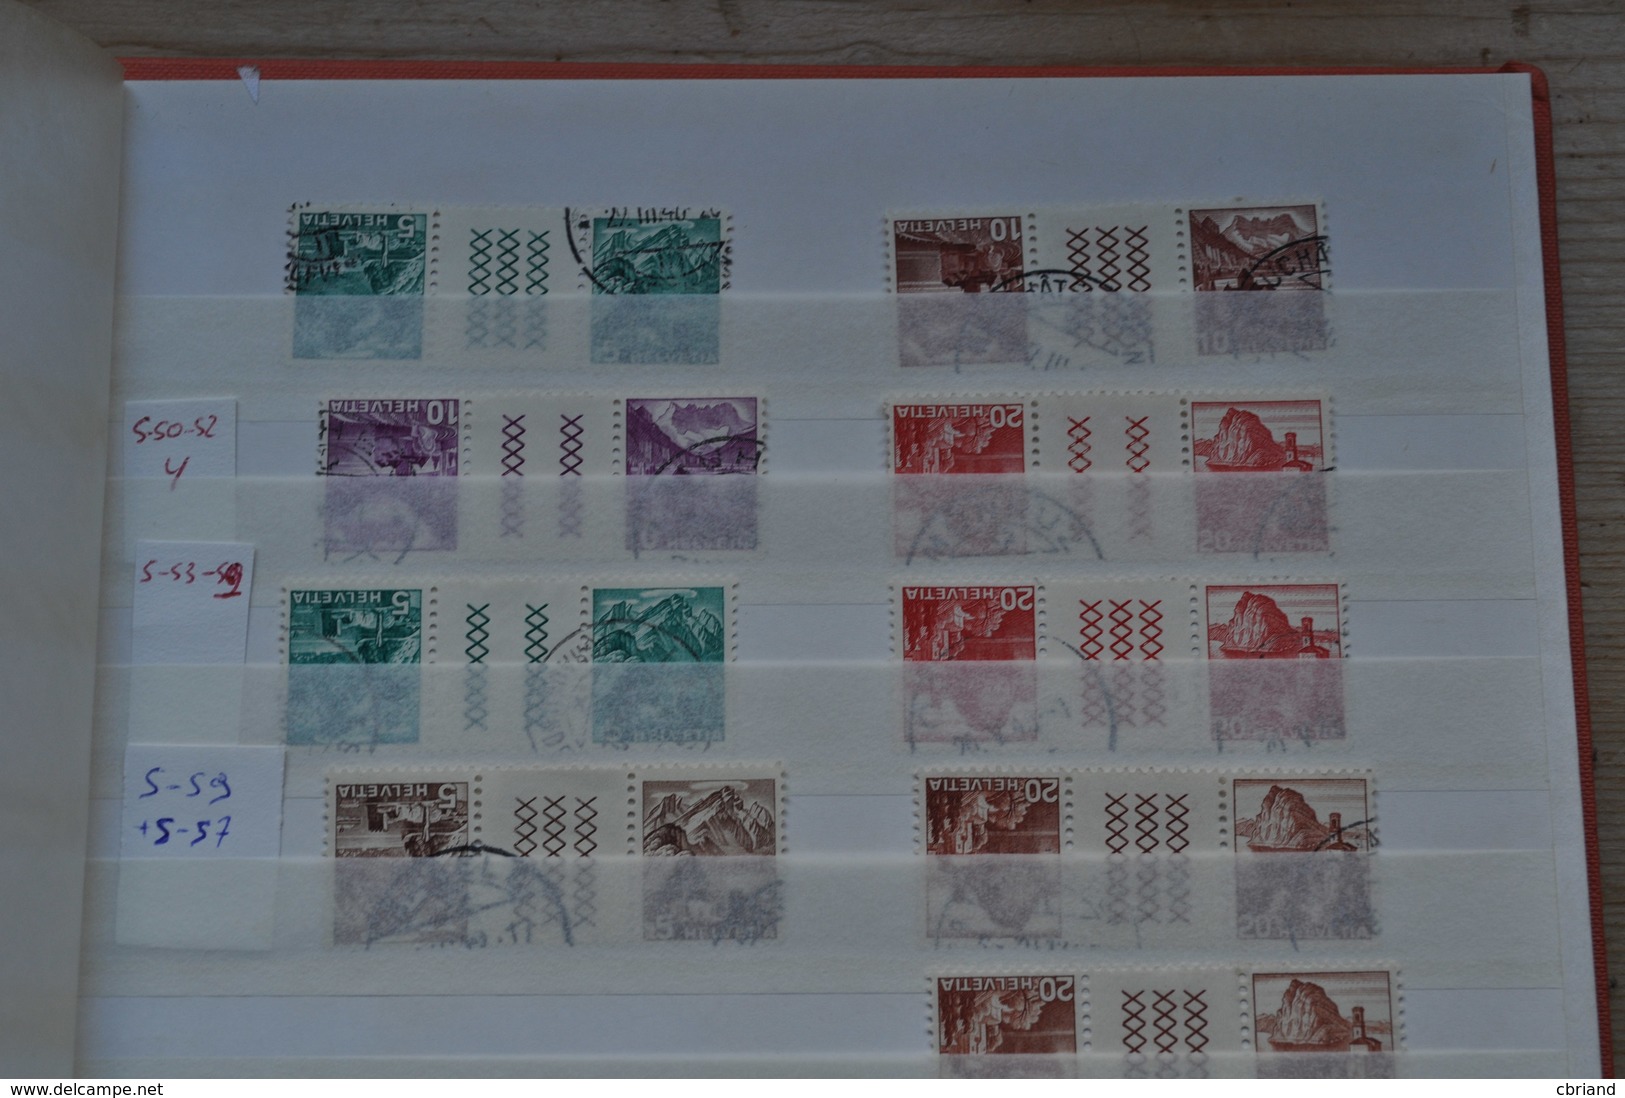 LIQUIDATION!!! Belle collection timbres de service, neuve et oblitérée